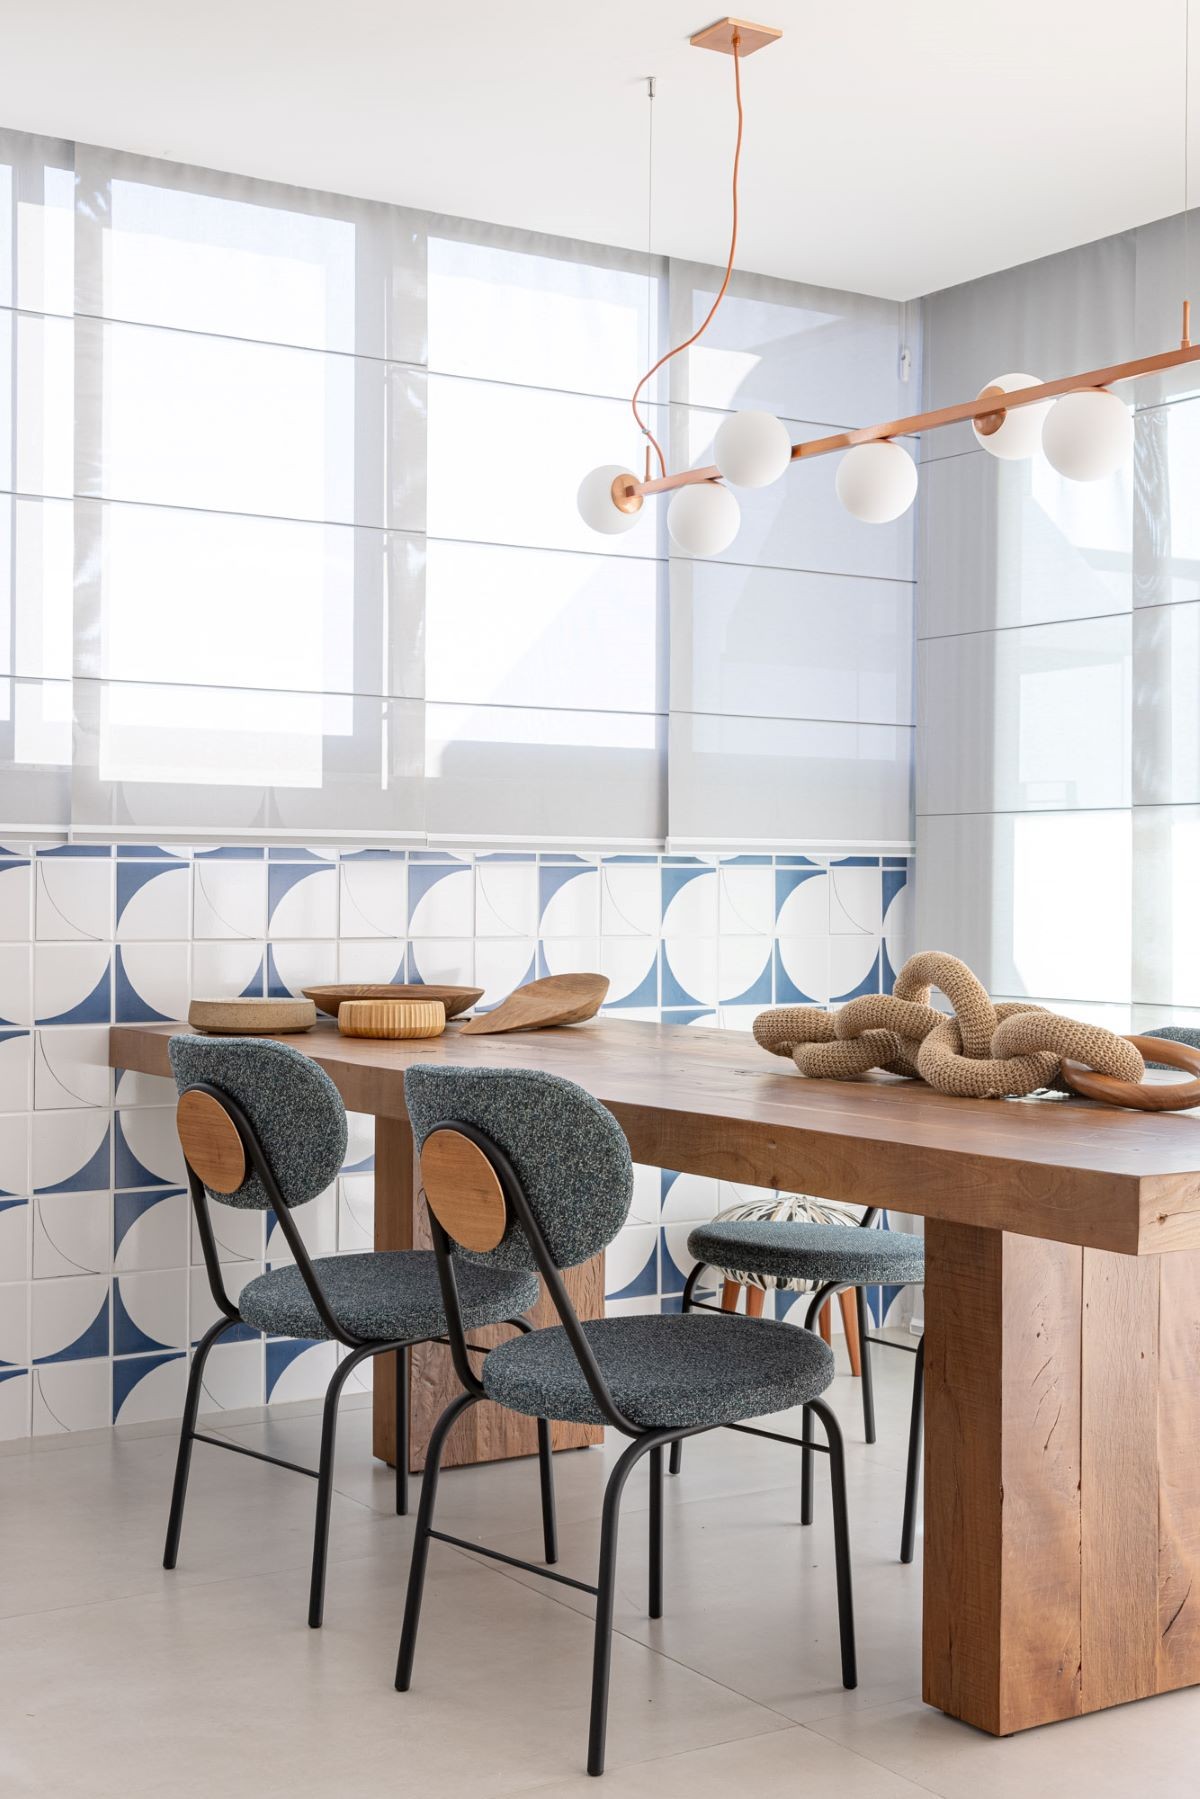 SALA DE JANTAR | O escritório desenvolveu azulejos exclusivos para os moradores para tornar o espaço ainda mais especial.Piso é da Portobello (Foto: Joana França / Divulgação)